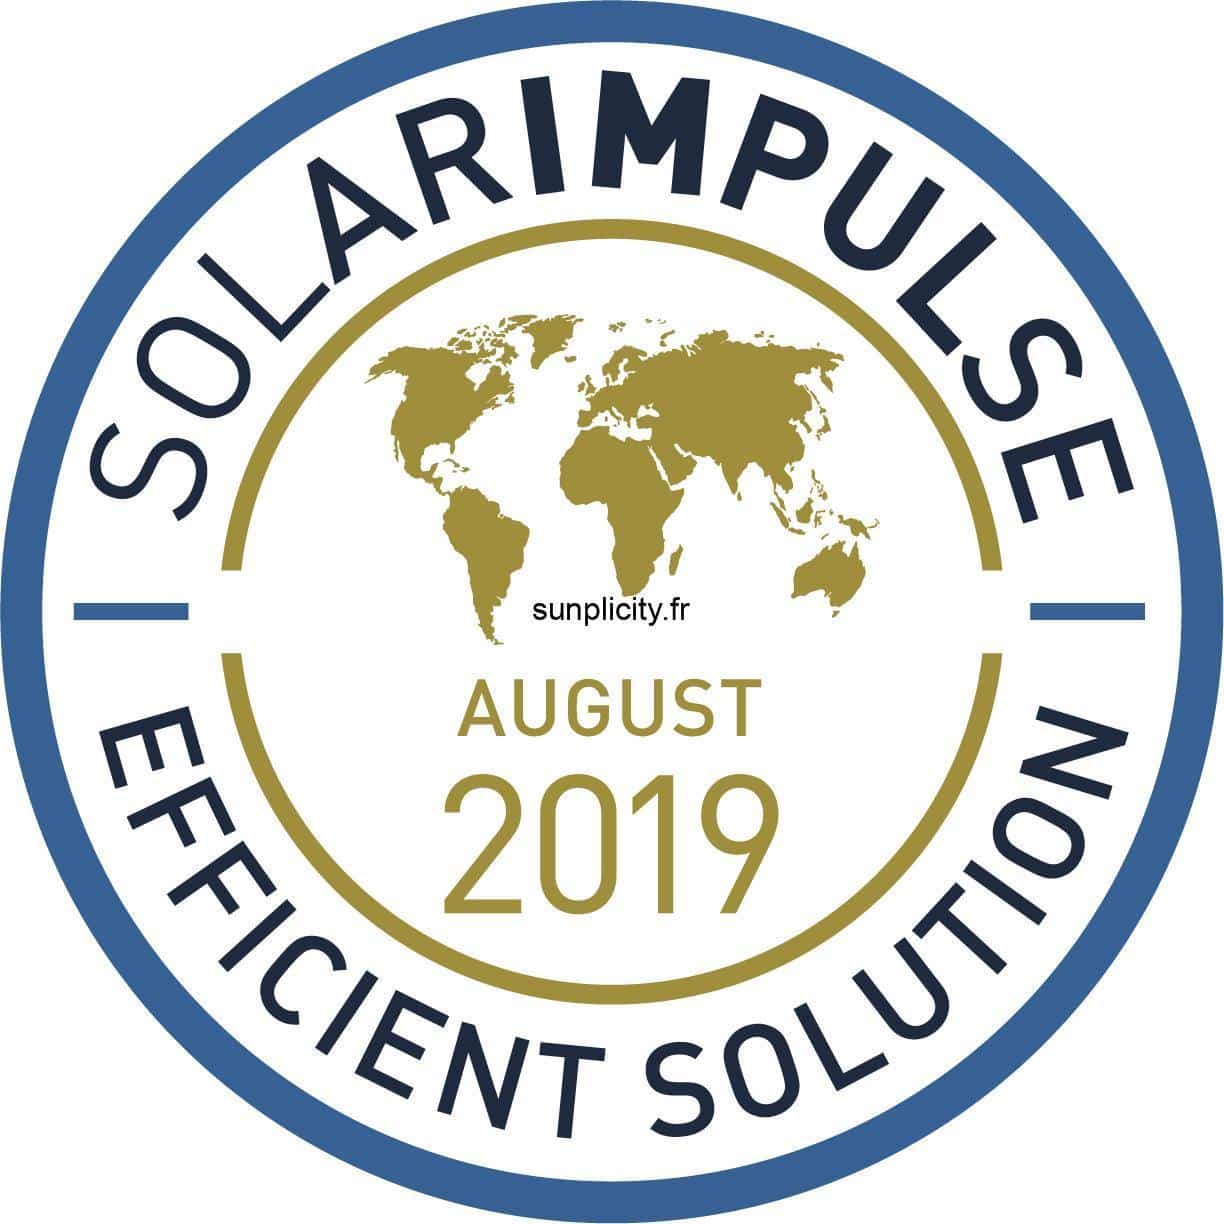 Le logo Solar Impulse Efficient Solution Aout 2019